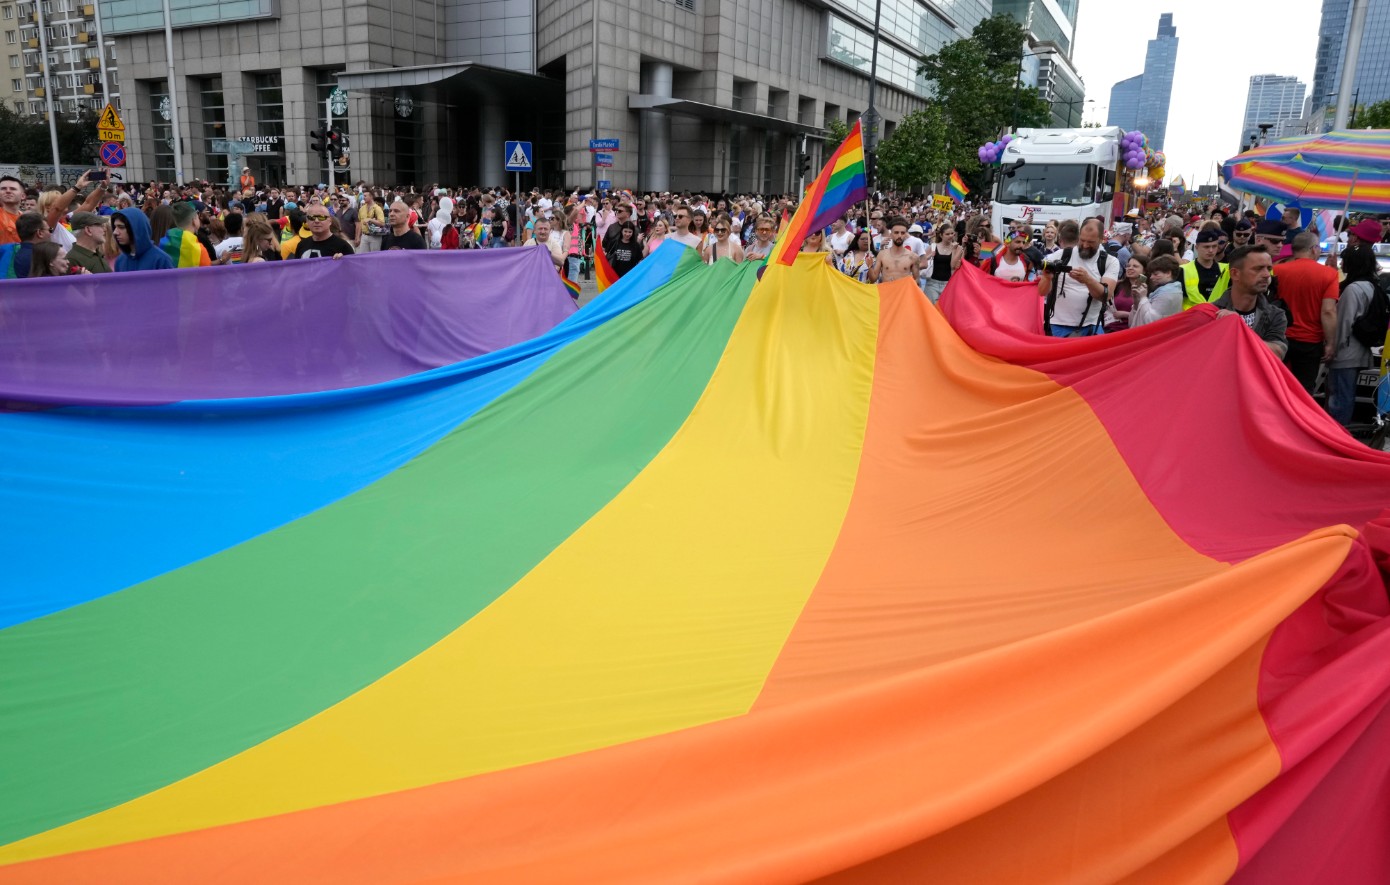 Γερμανία: Στις 17 Μαΐου ποδοσφαιριστές, προπονητές και διαιτητές θα αποκαλύψουν ότι είναι γκέι